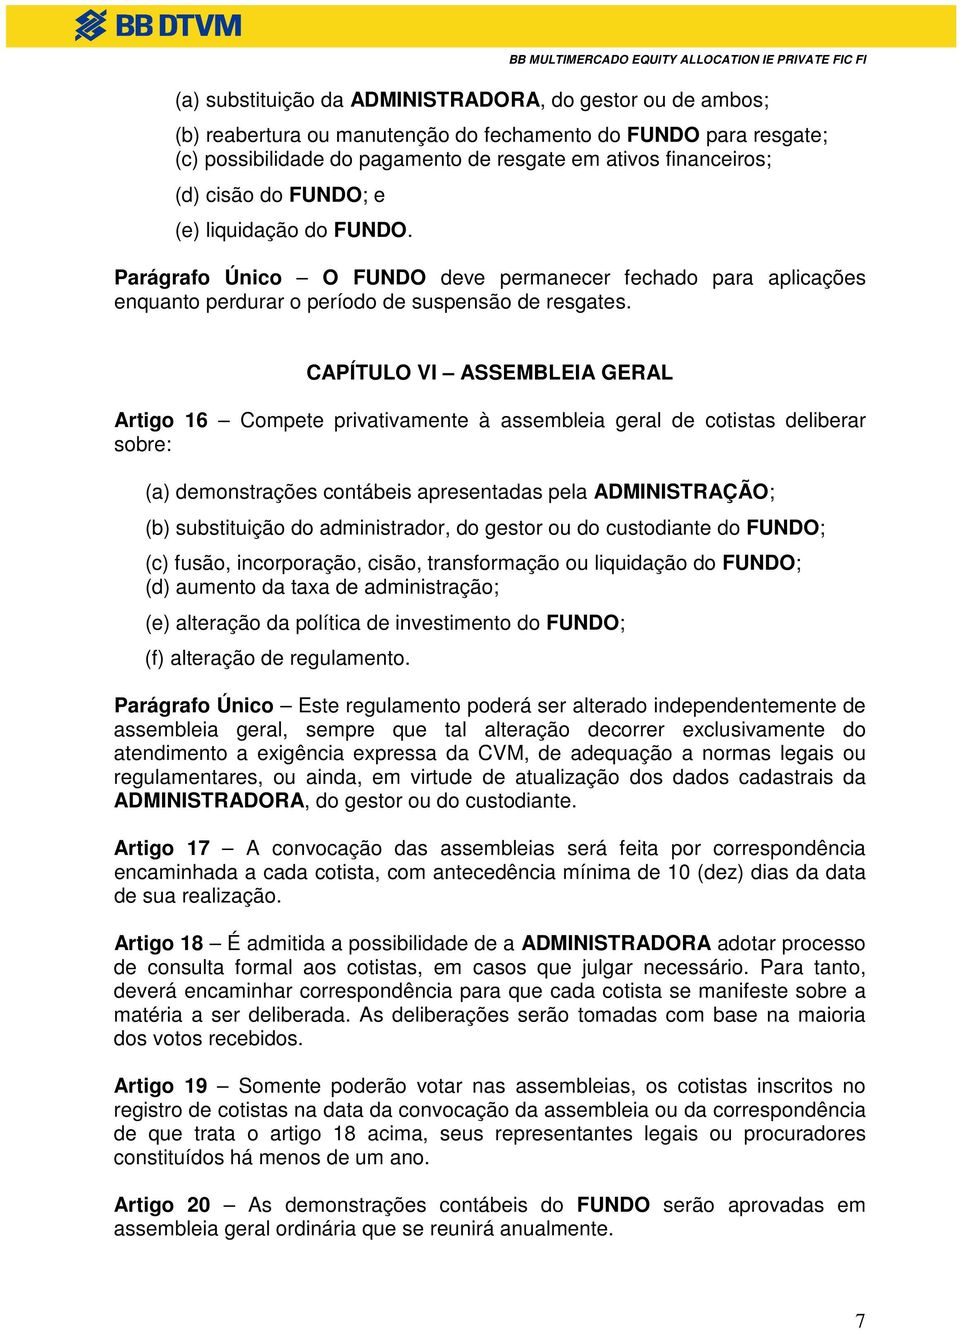 CAPÍTULO VI ASSEMBLEIA GERAL Artigo 16 Compete privativamente à assembleia geral de cotistas deliberar sobre: (a) demonstrações contábeis apresentadas pela ADMINISTRAÇÃO; (b) substituição do